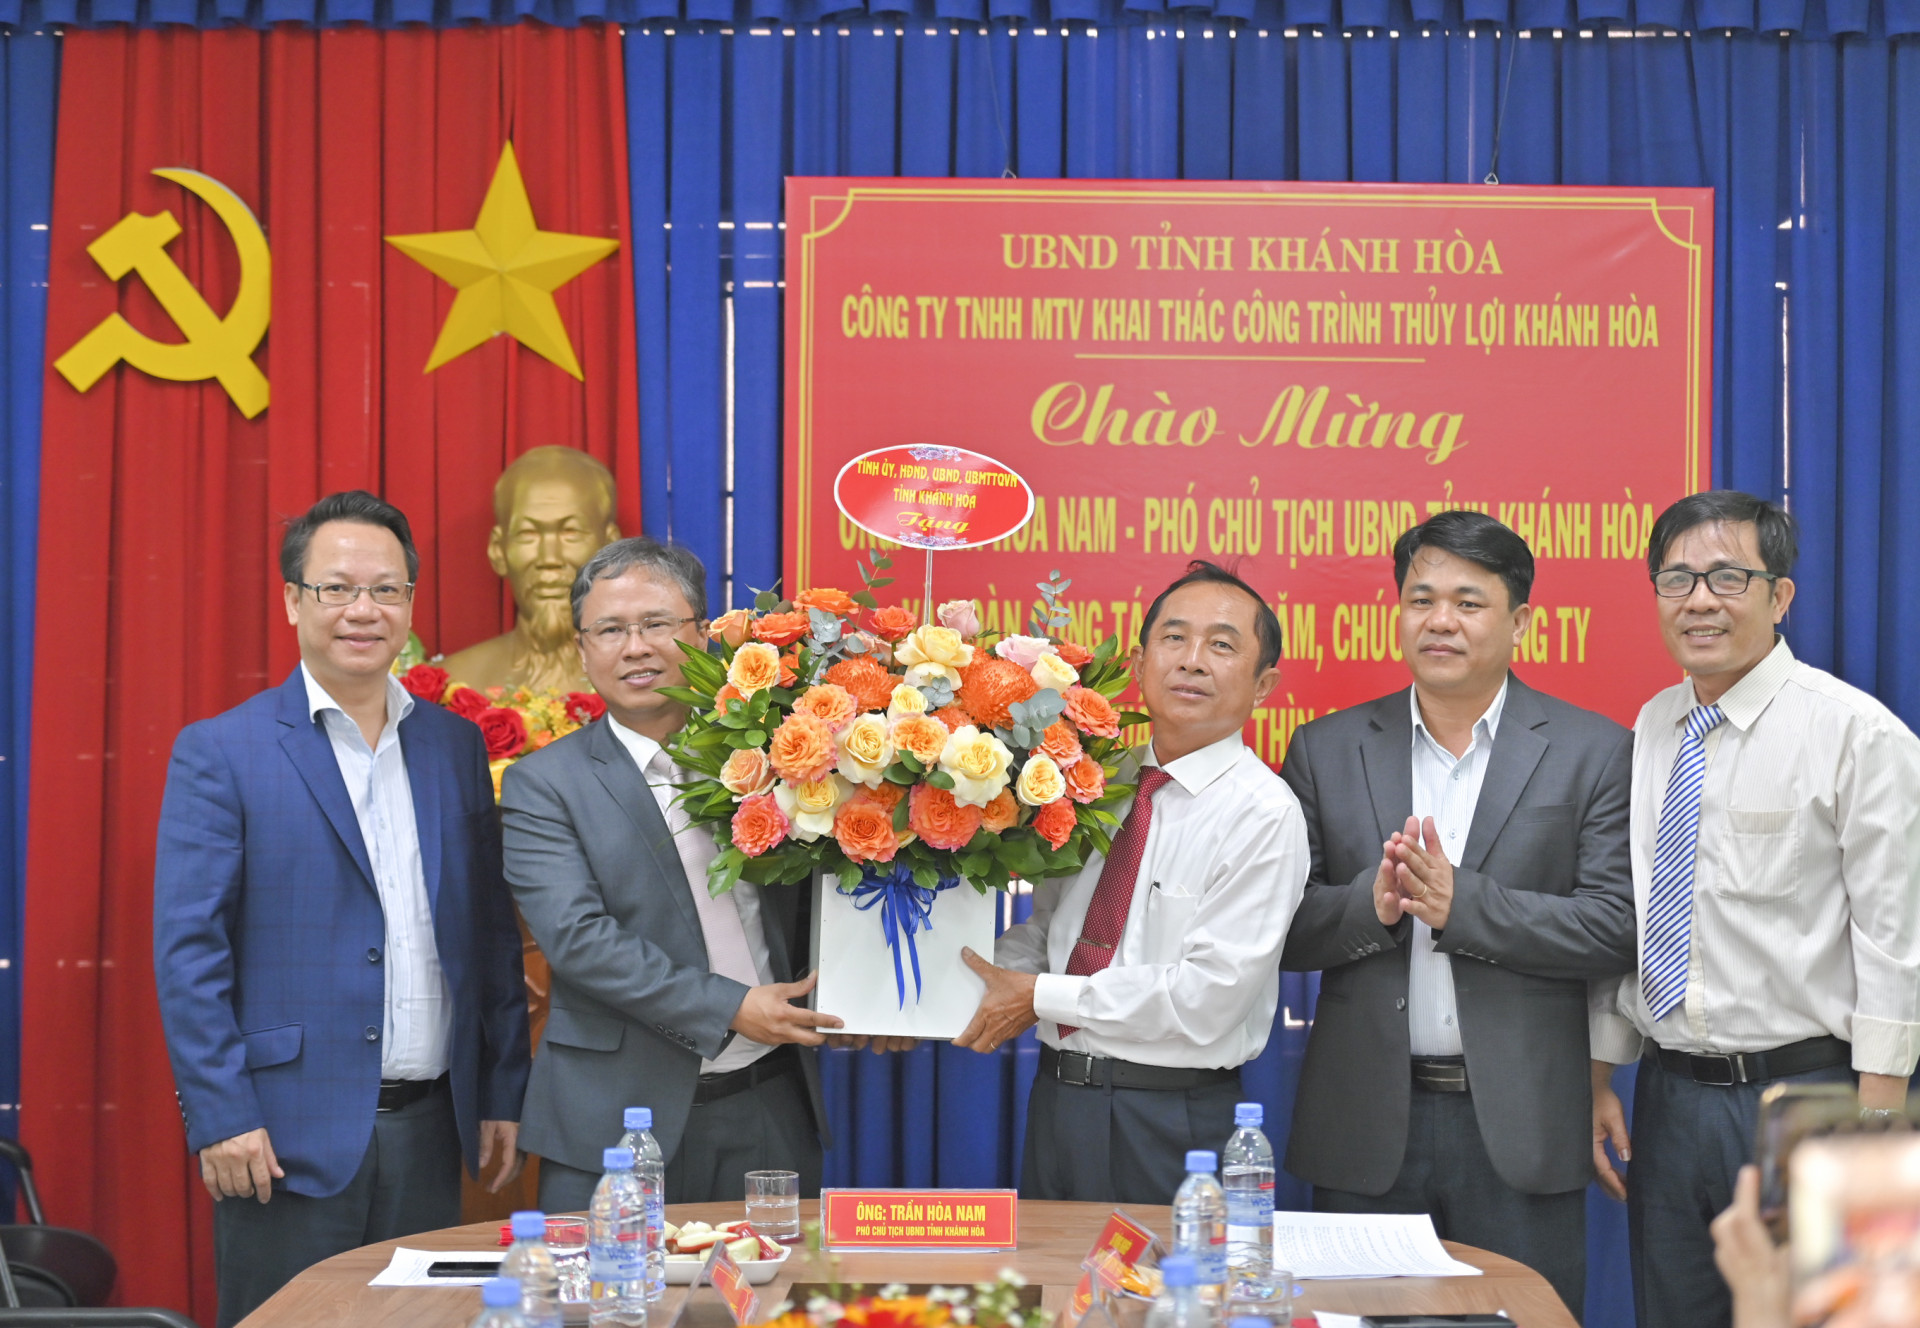 Ông Trần Hòa Nam chúc Tết Công ty TNHH MTV Khai thác công trình Thủy lợi Khánh Hòa.